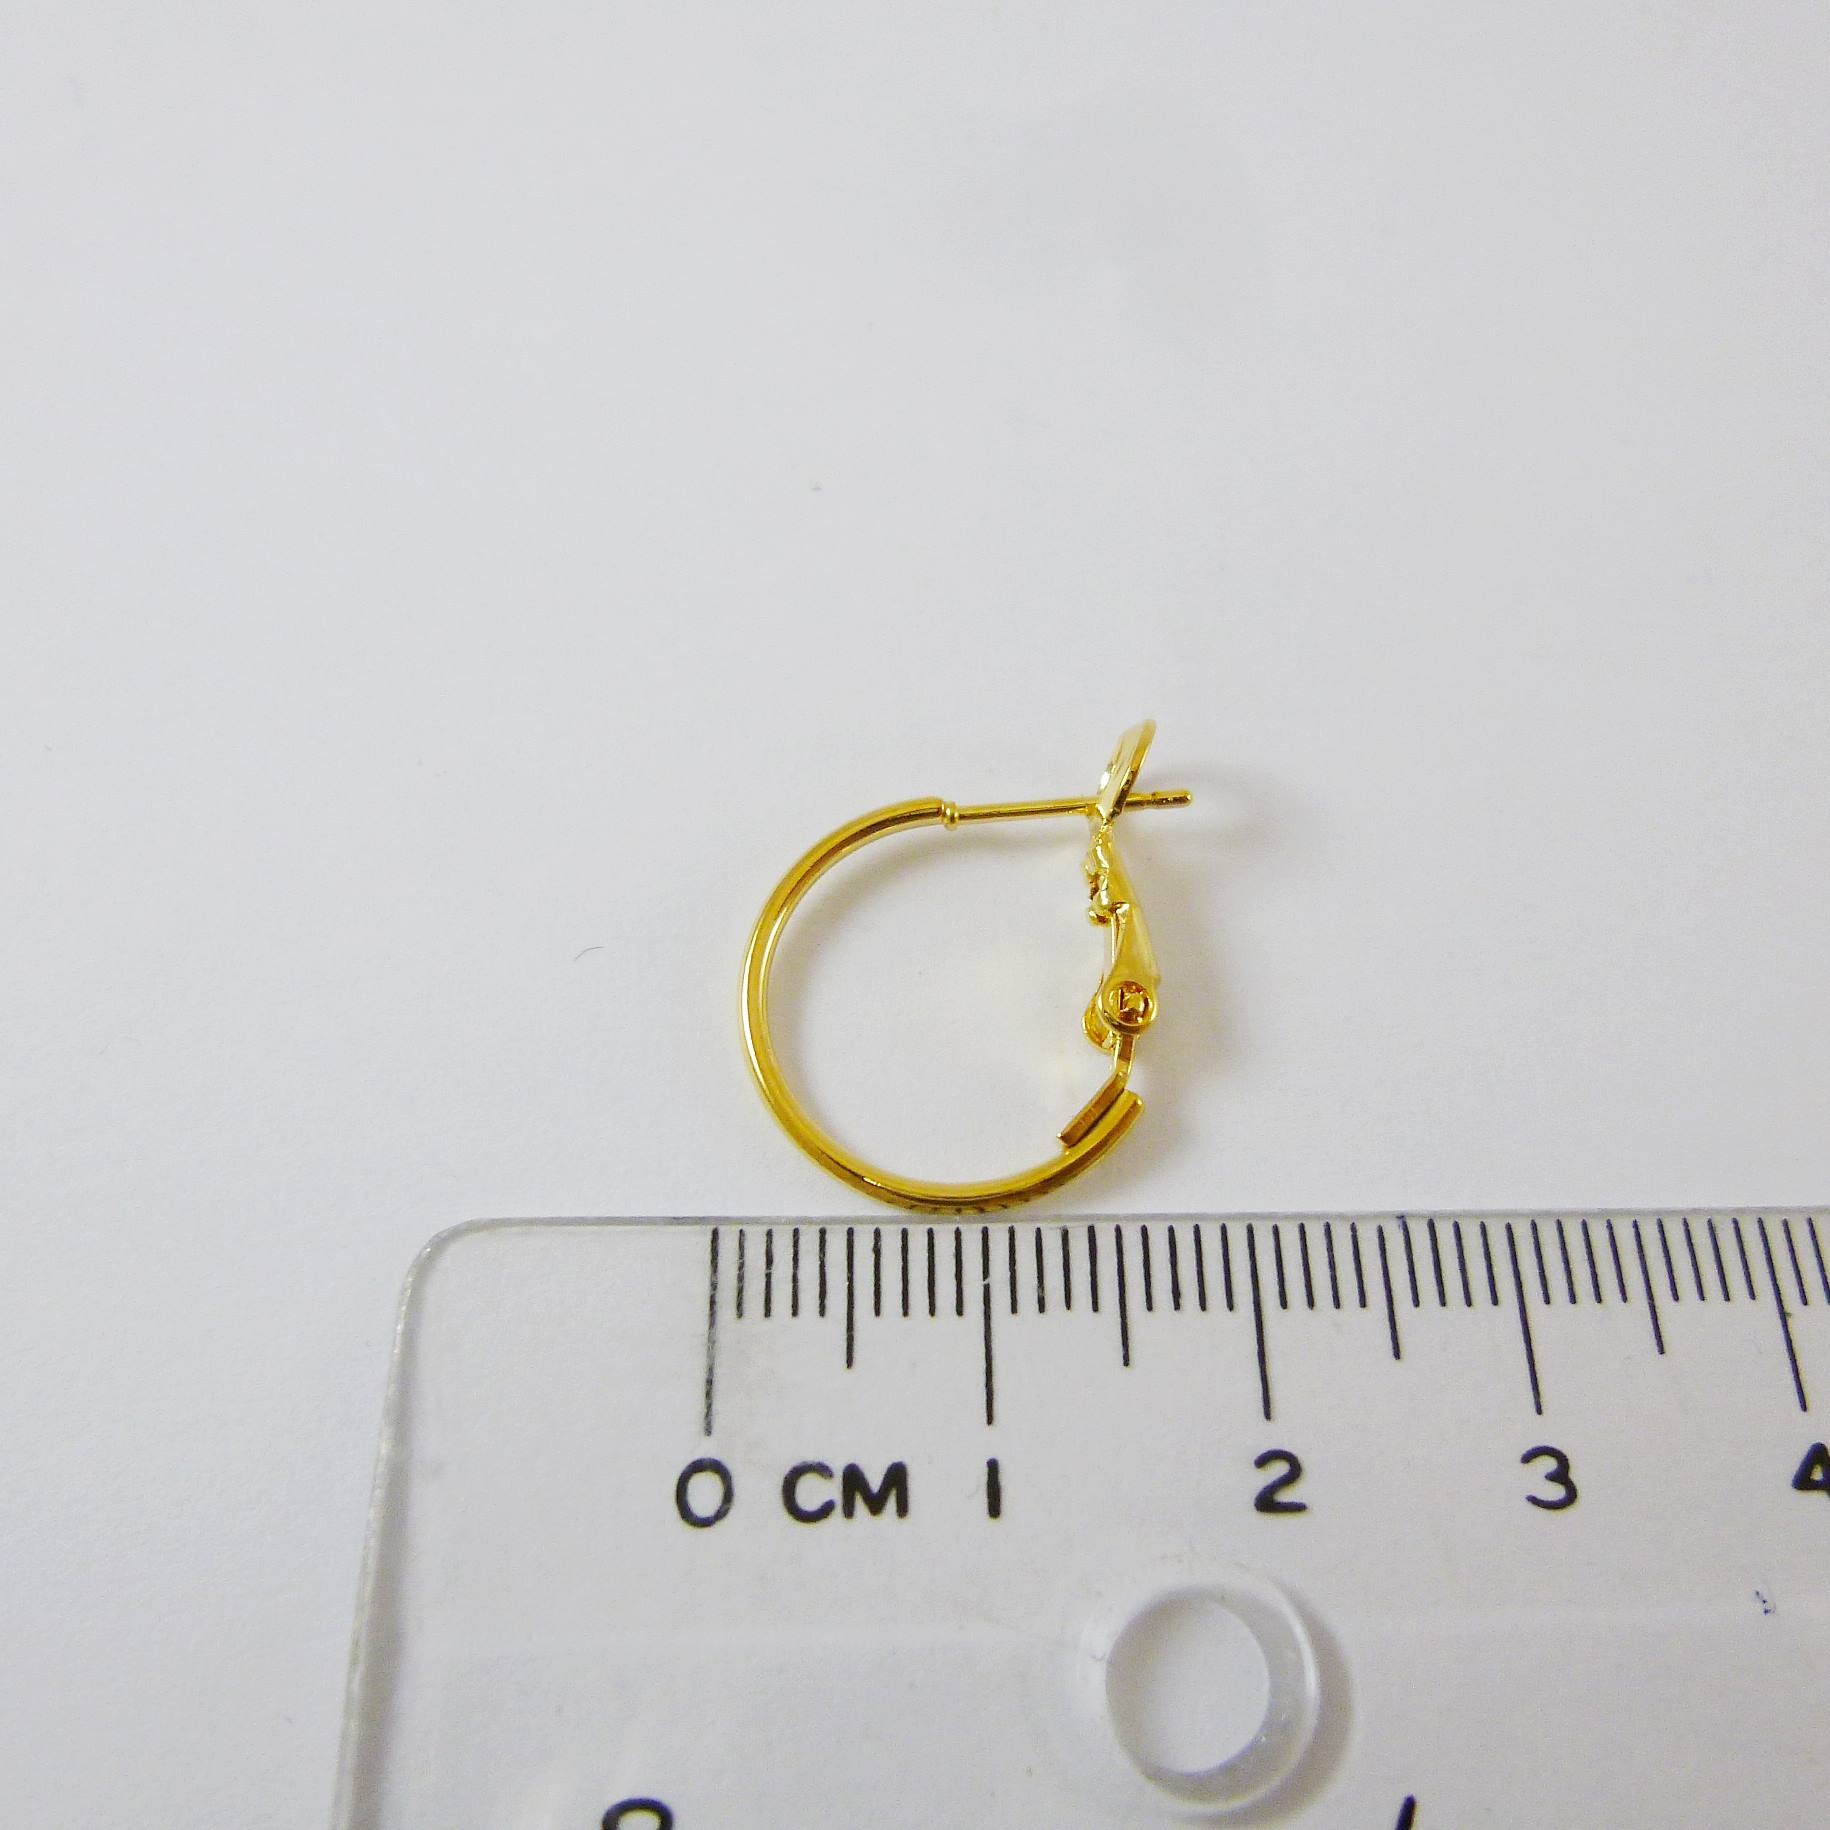 銅鍍金色圓形耳環-16mm